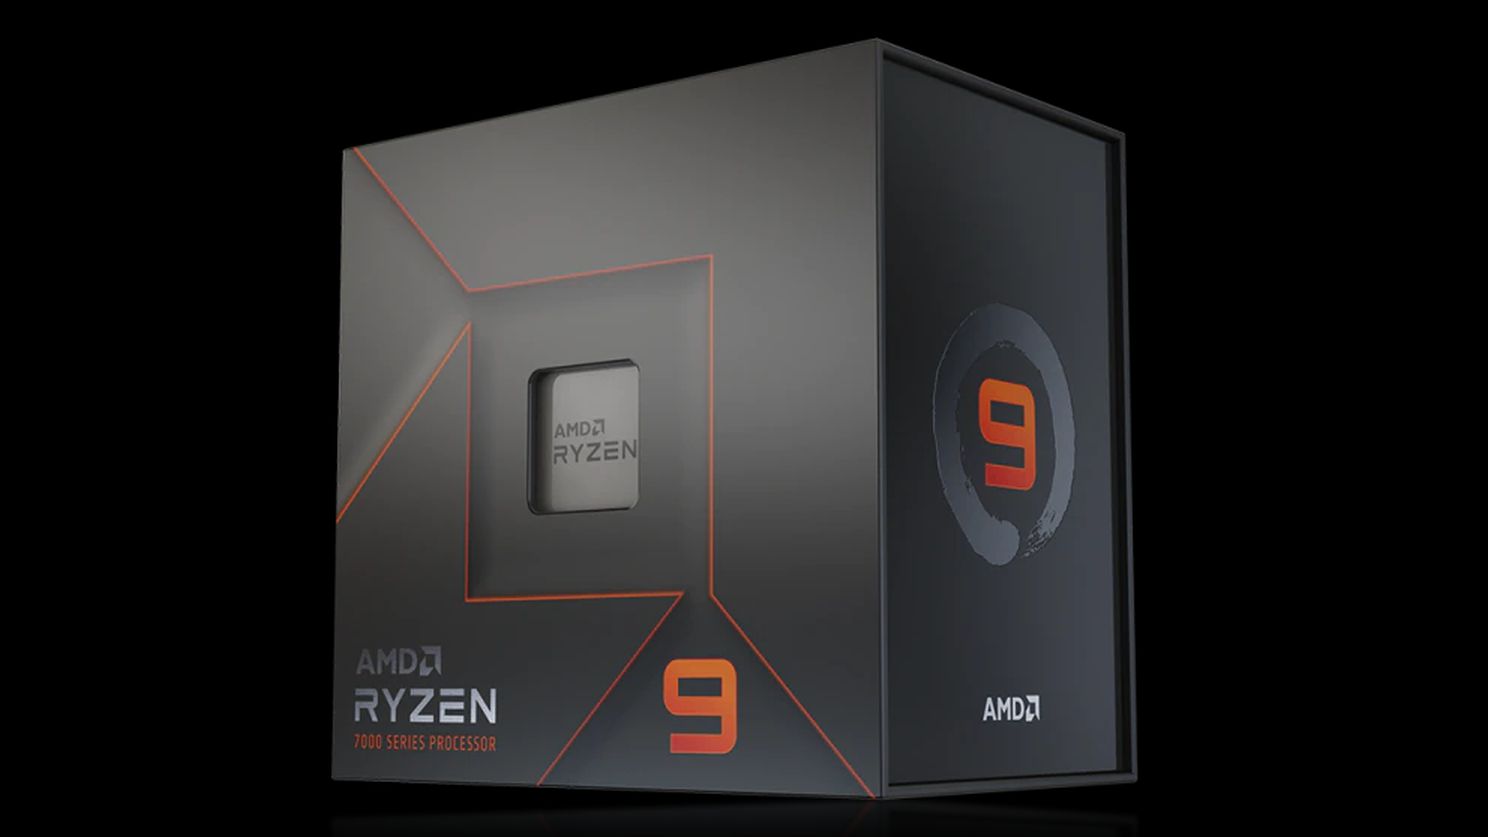 AMD Ryzen 9 7950X overclocked to 7.2 GHz on a single core; multi